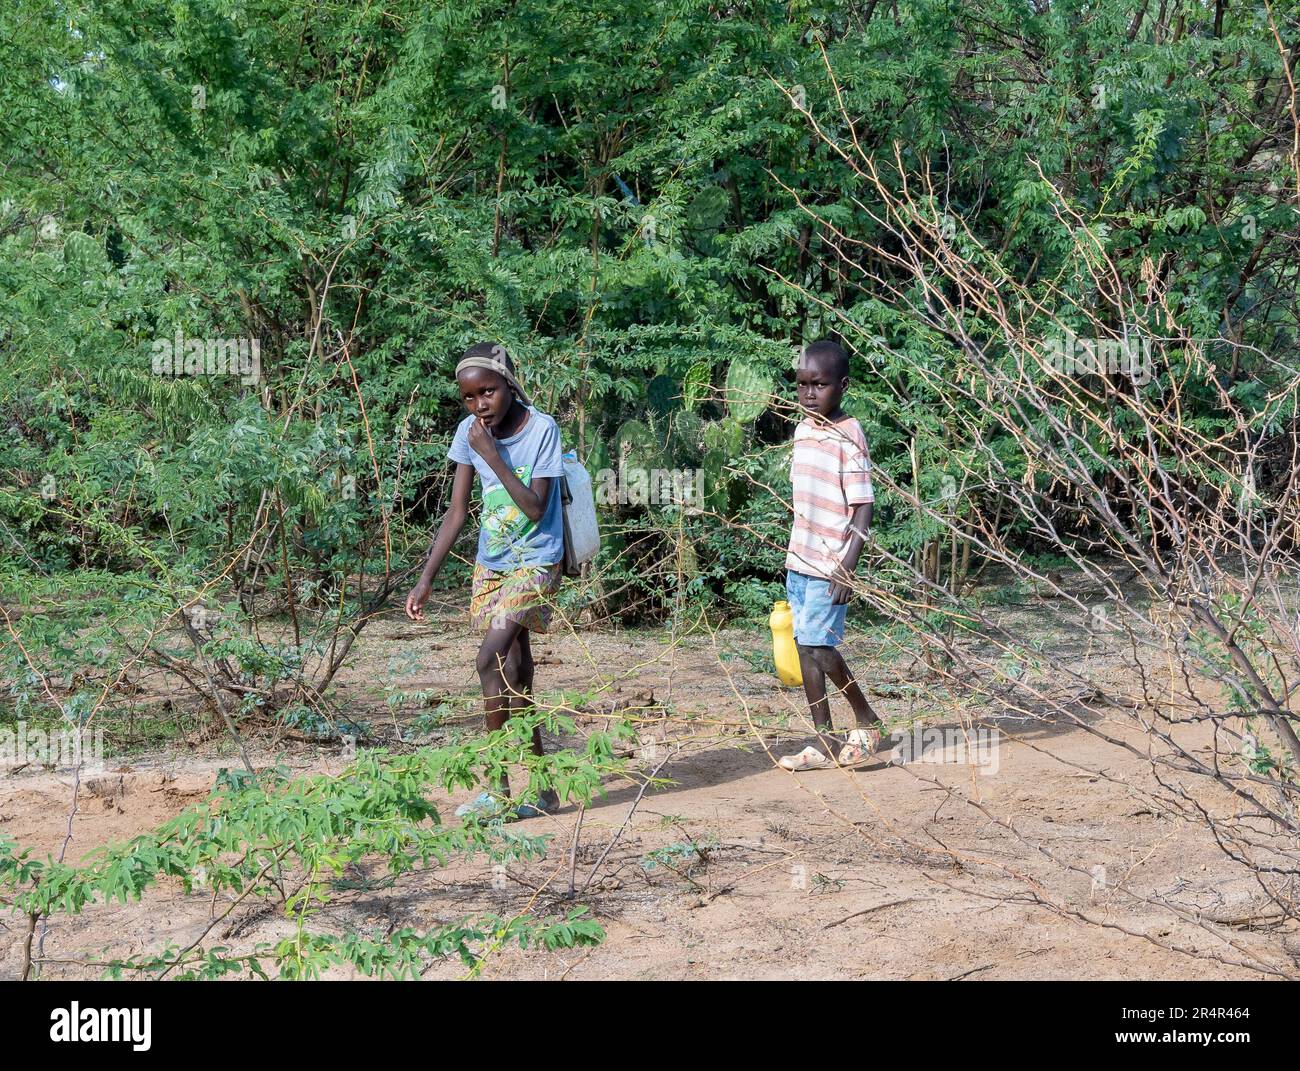 Zwei Kinder, die Wasserkannen durch Büsche trugen. Kenia, Afrika. Stockfoto